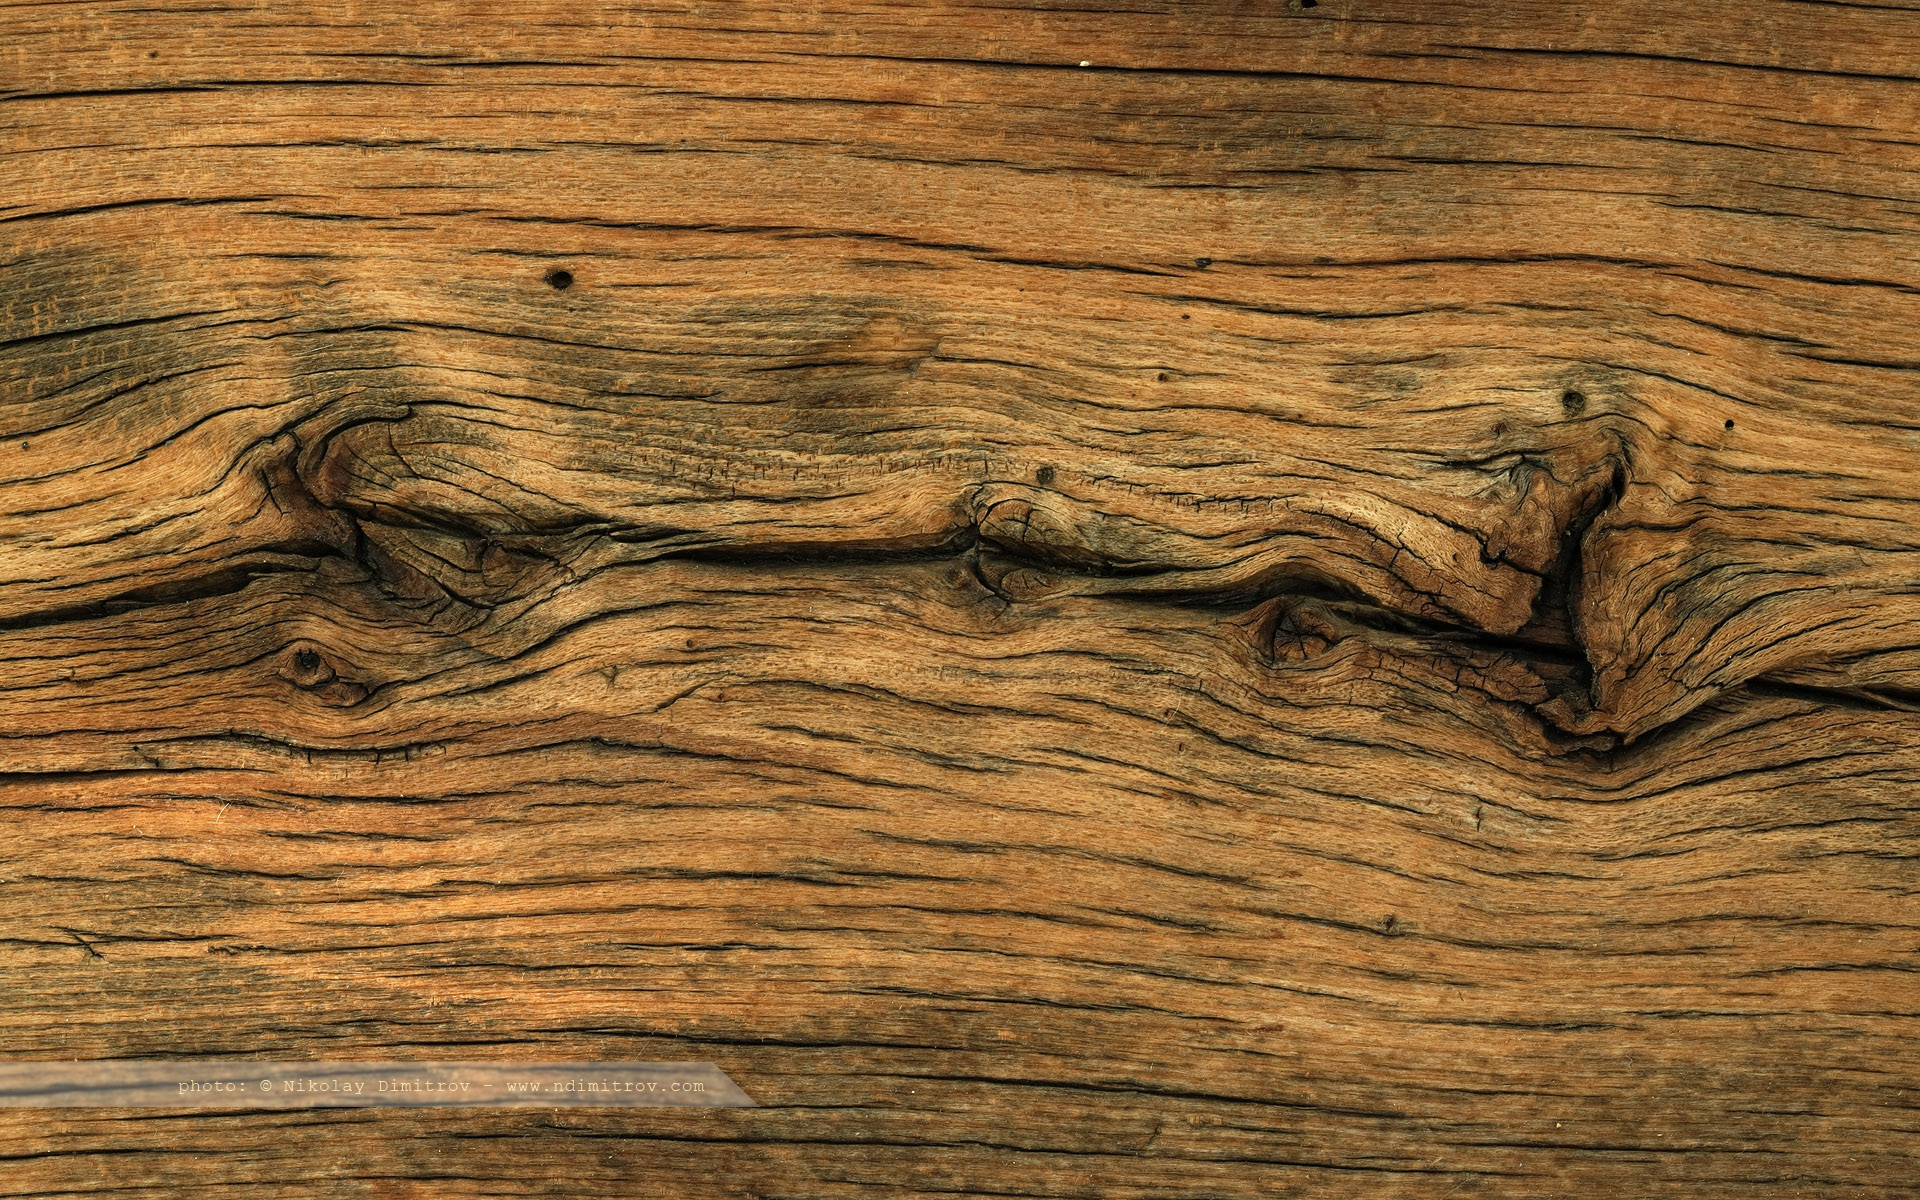 holz wallpaper,madera,marrón,suelos de madera,mancha de madera,madera dura